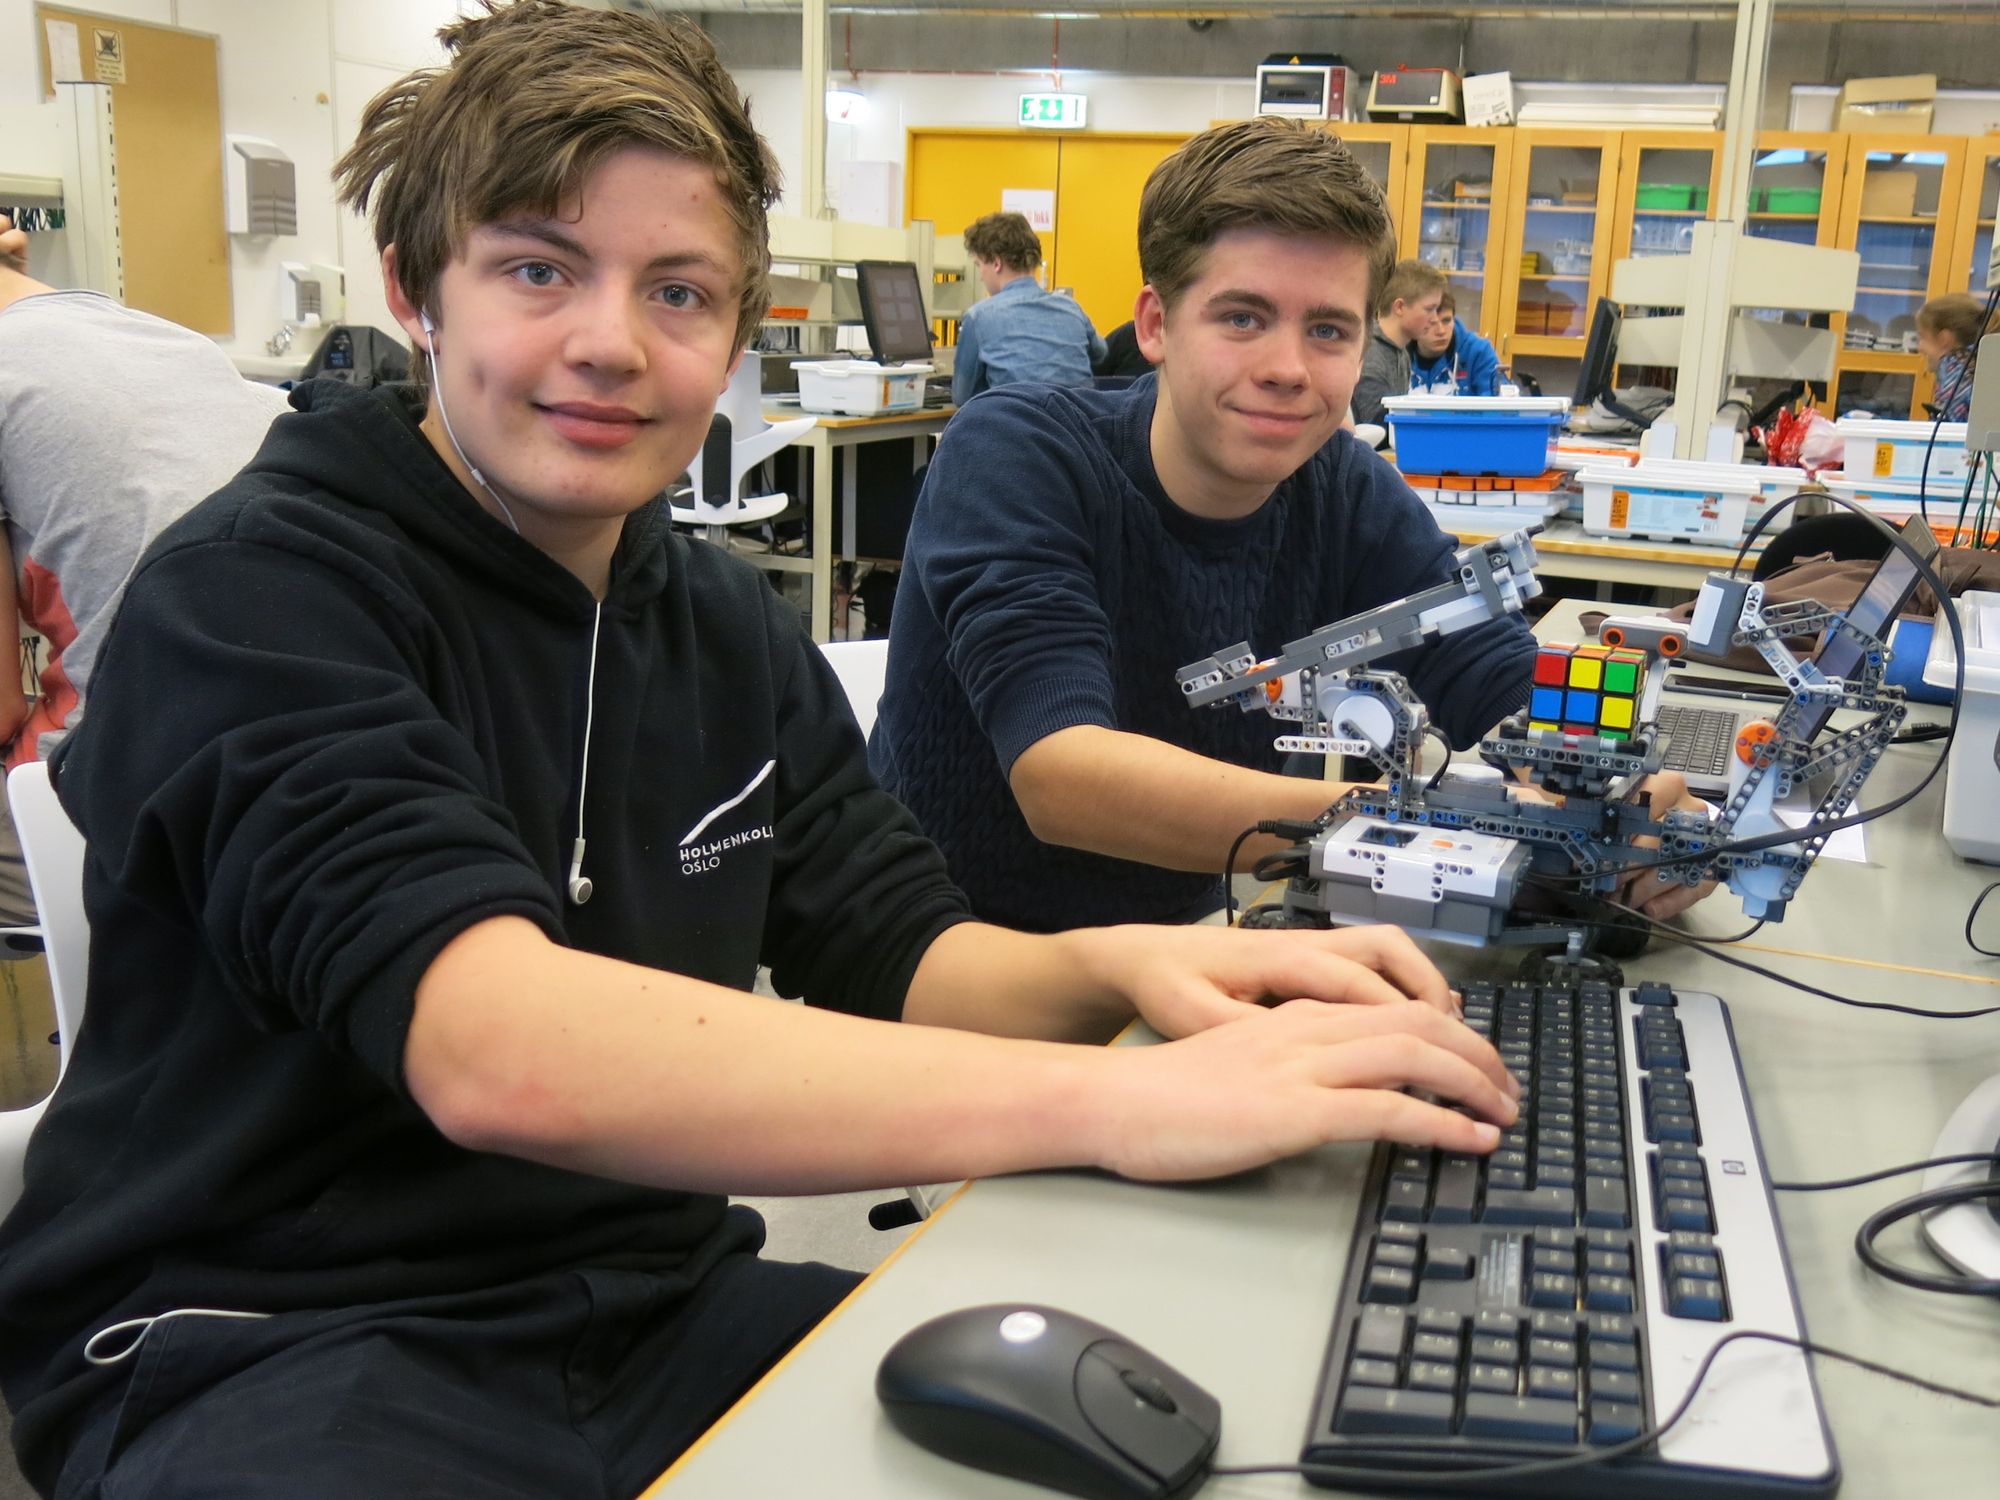 Robotbygging innebærer også programmering. Elevene bruker programmeringsverktøyet Matlab. Her er Kasper Furnes Bernhoff, til venstre, og Amund Buer i aksjon. Foto: Lars Gunnar Dahle, UiS.